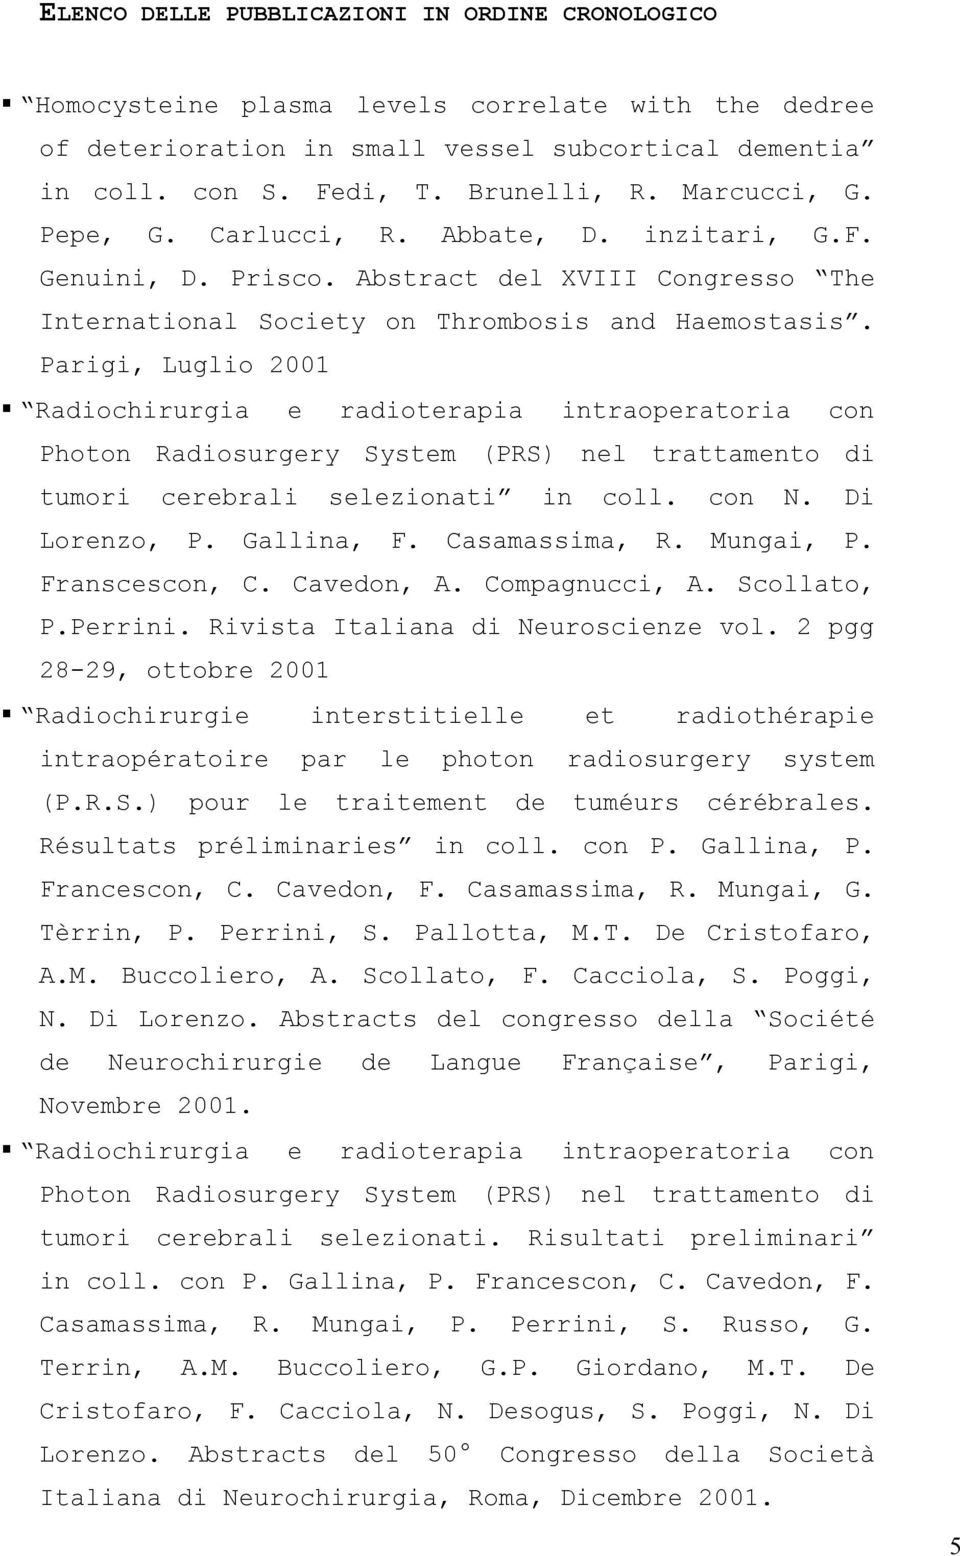 Parigi, Luglio 2001 Radiochirurgia e radioterapia intraoperatoria con Photon Radiosurgery System (PRS) nel trattamento di tumori cerebrali selezionati in coll. con N. Di Lorenzo, P. Gallina, F.